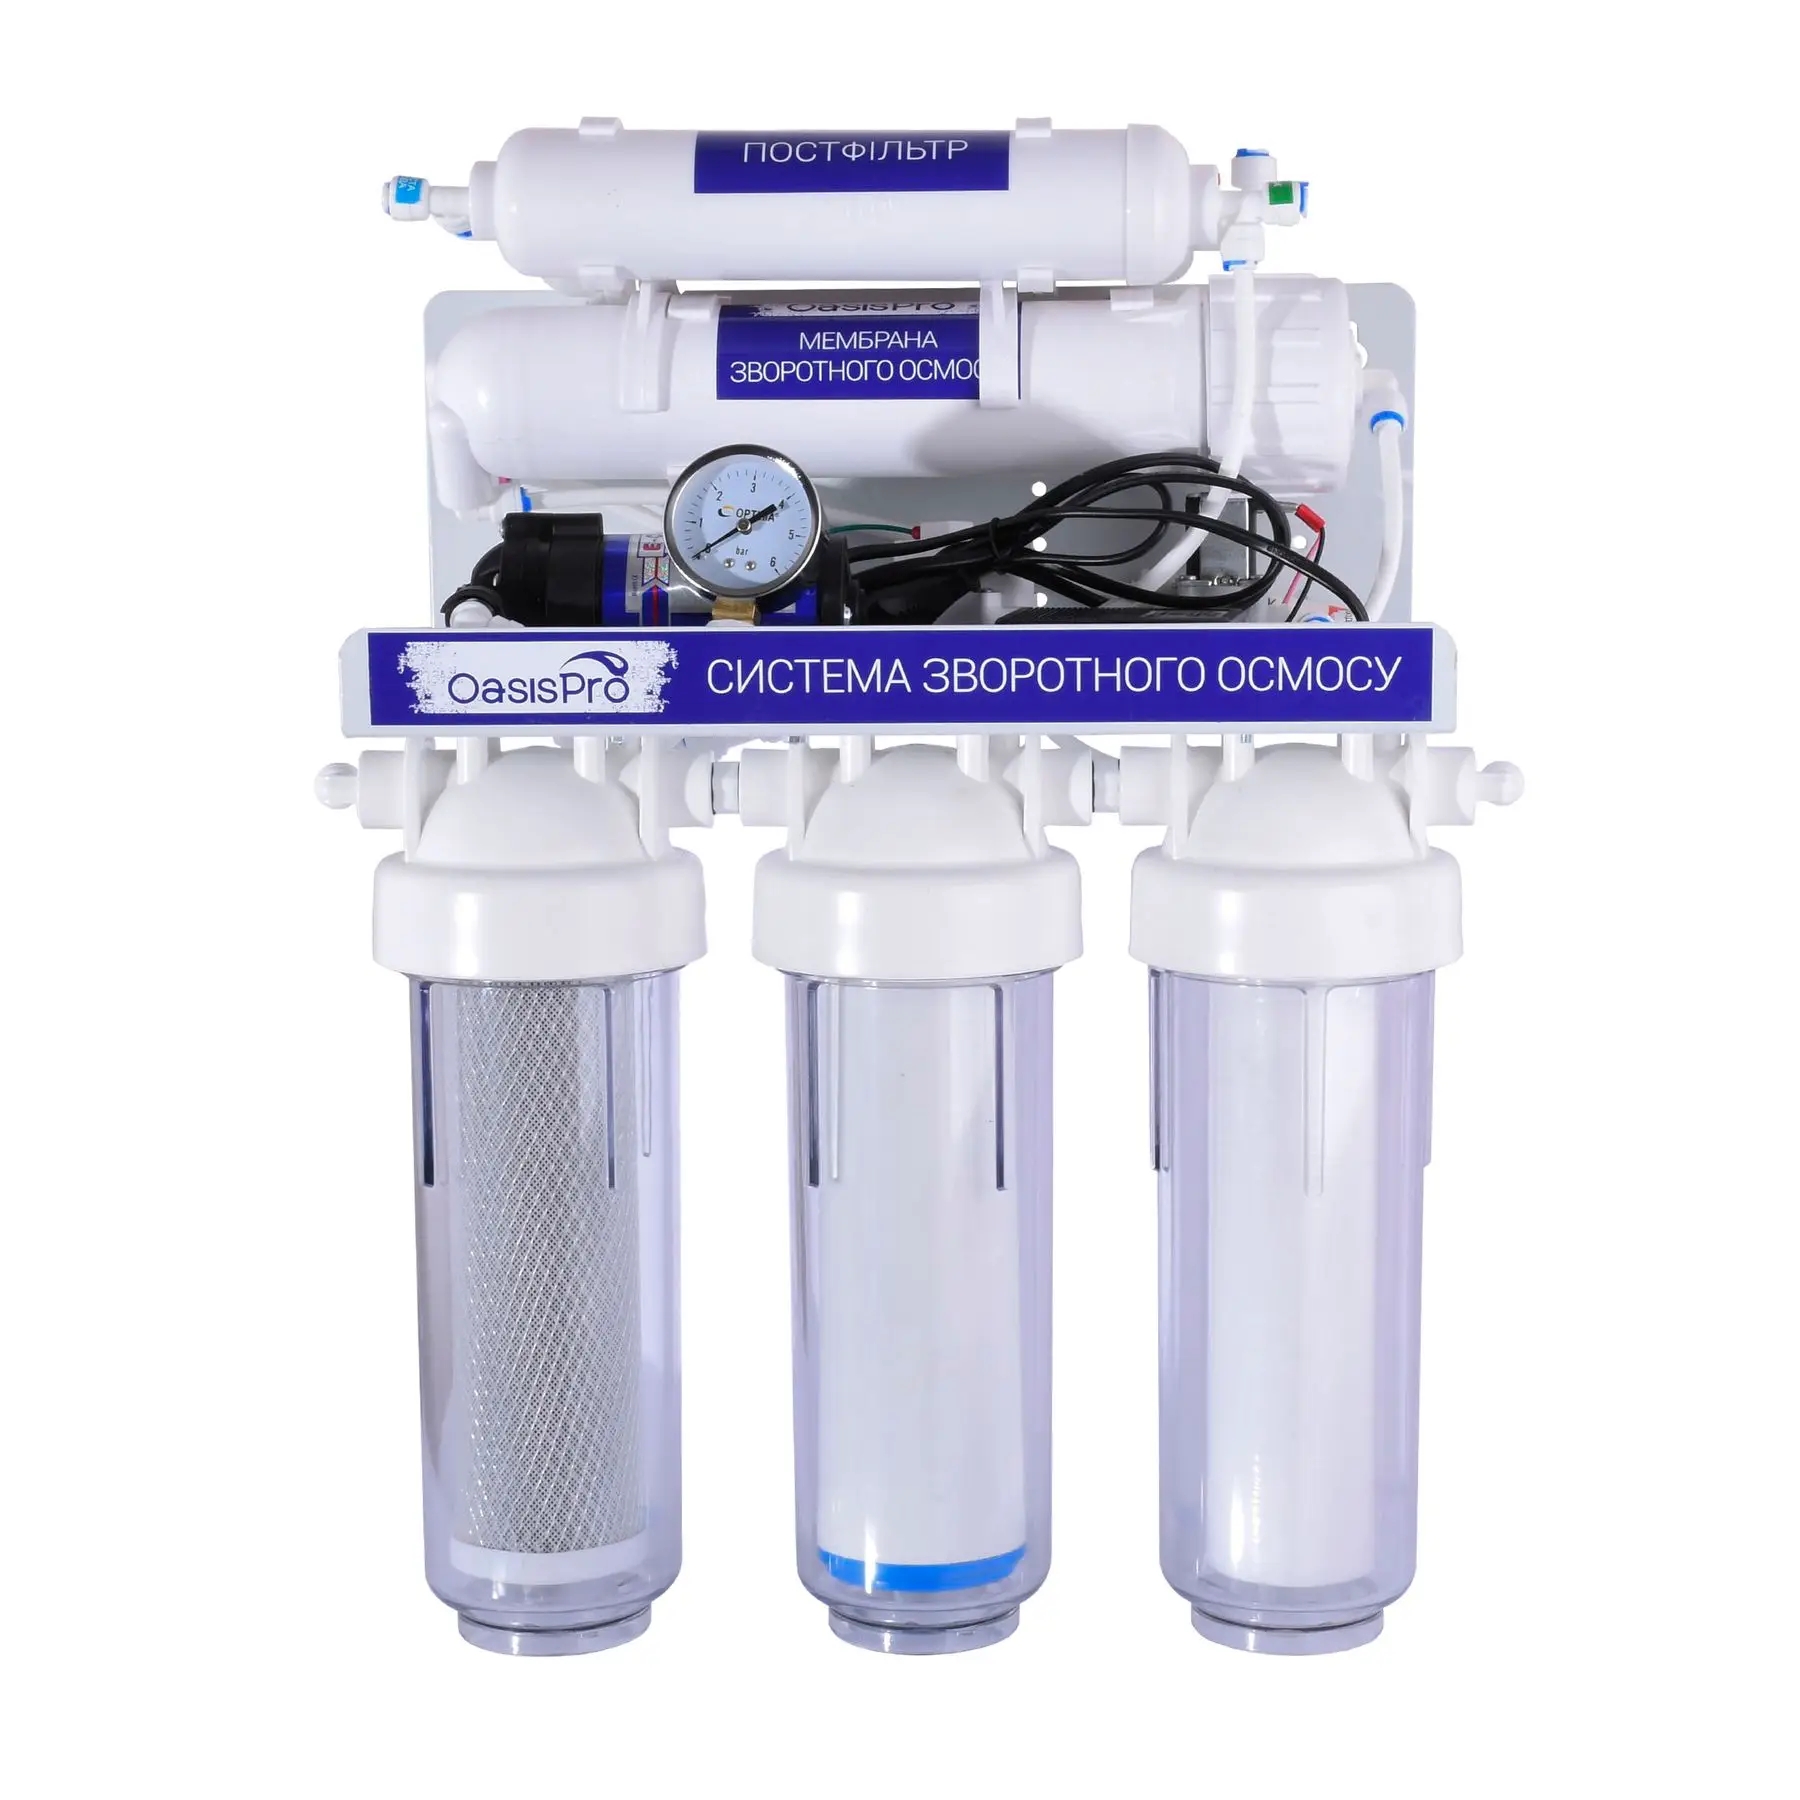 Фильтр для воды OasisPro BSL03M-RO-75 насос + пласт. бак, минерализатор цена 9286.00 грн - фотография 2